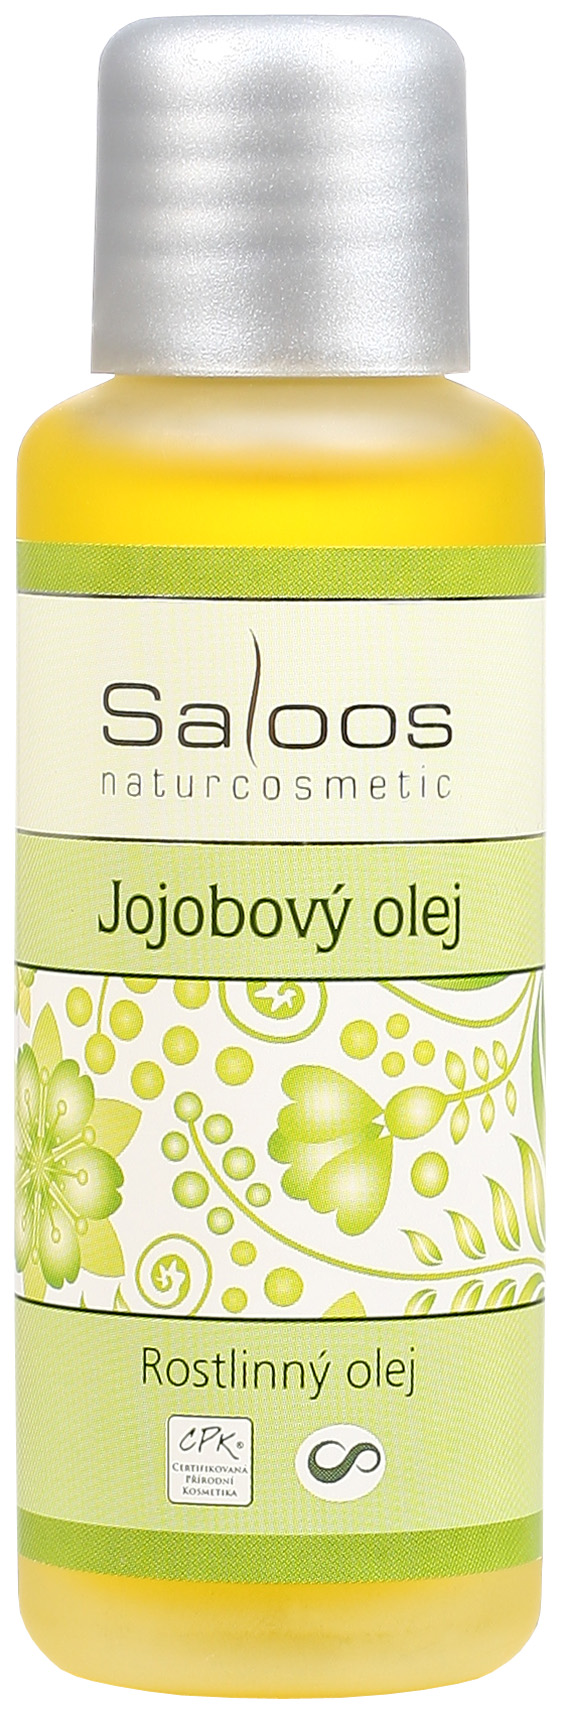 Jojobový olej Saloos Objem: 20 ml